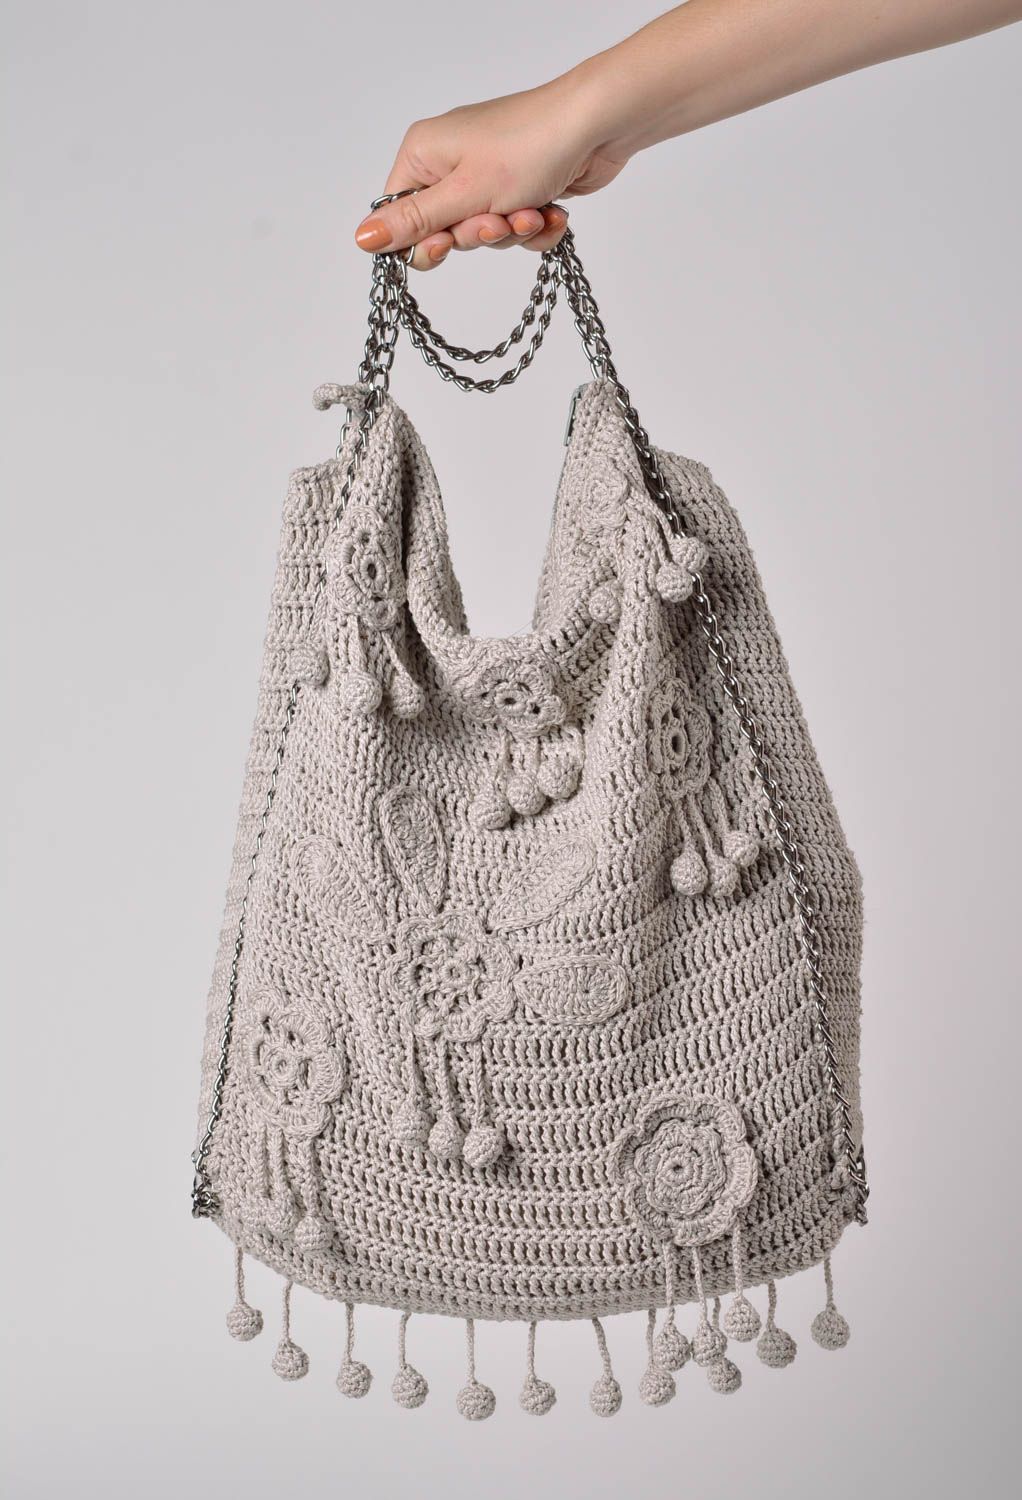 Gehäkelte Handtasche in Grau aus Baumwollgarnen an Kette für Damen handmade foto 2